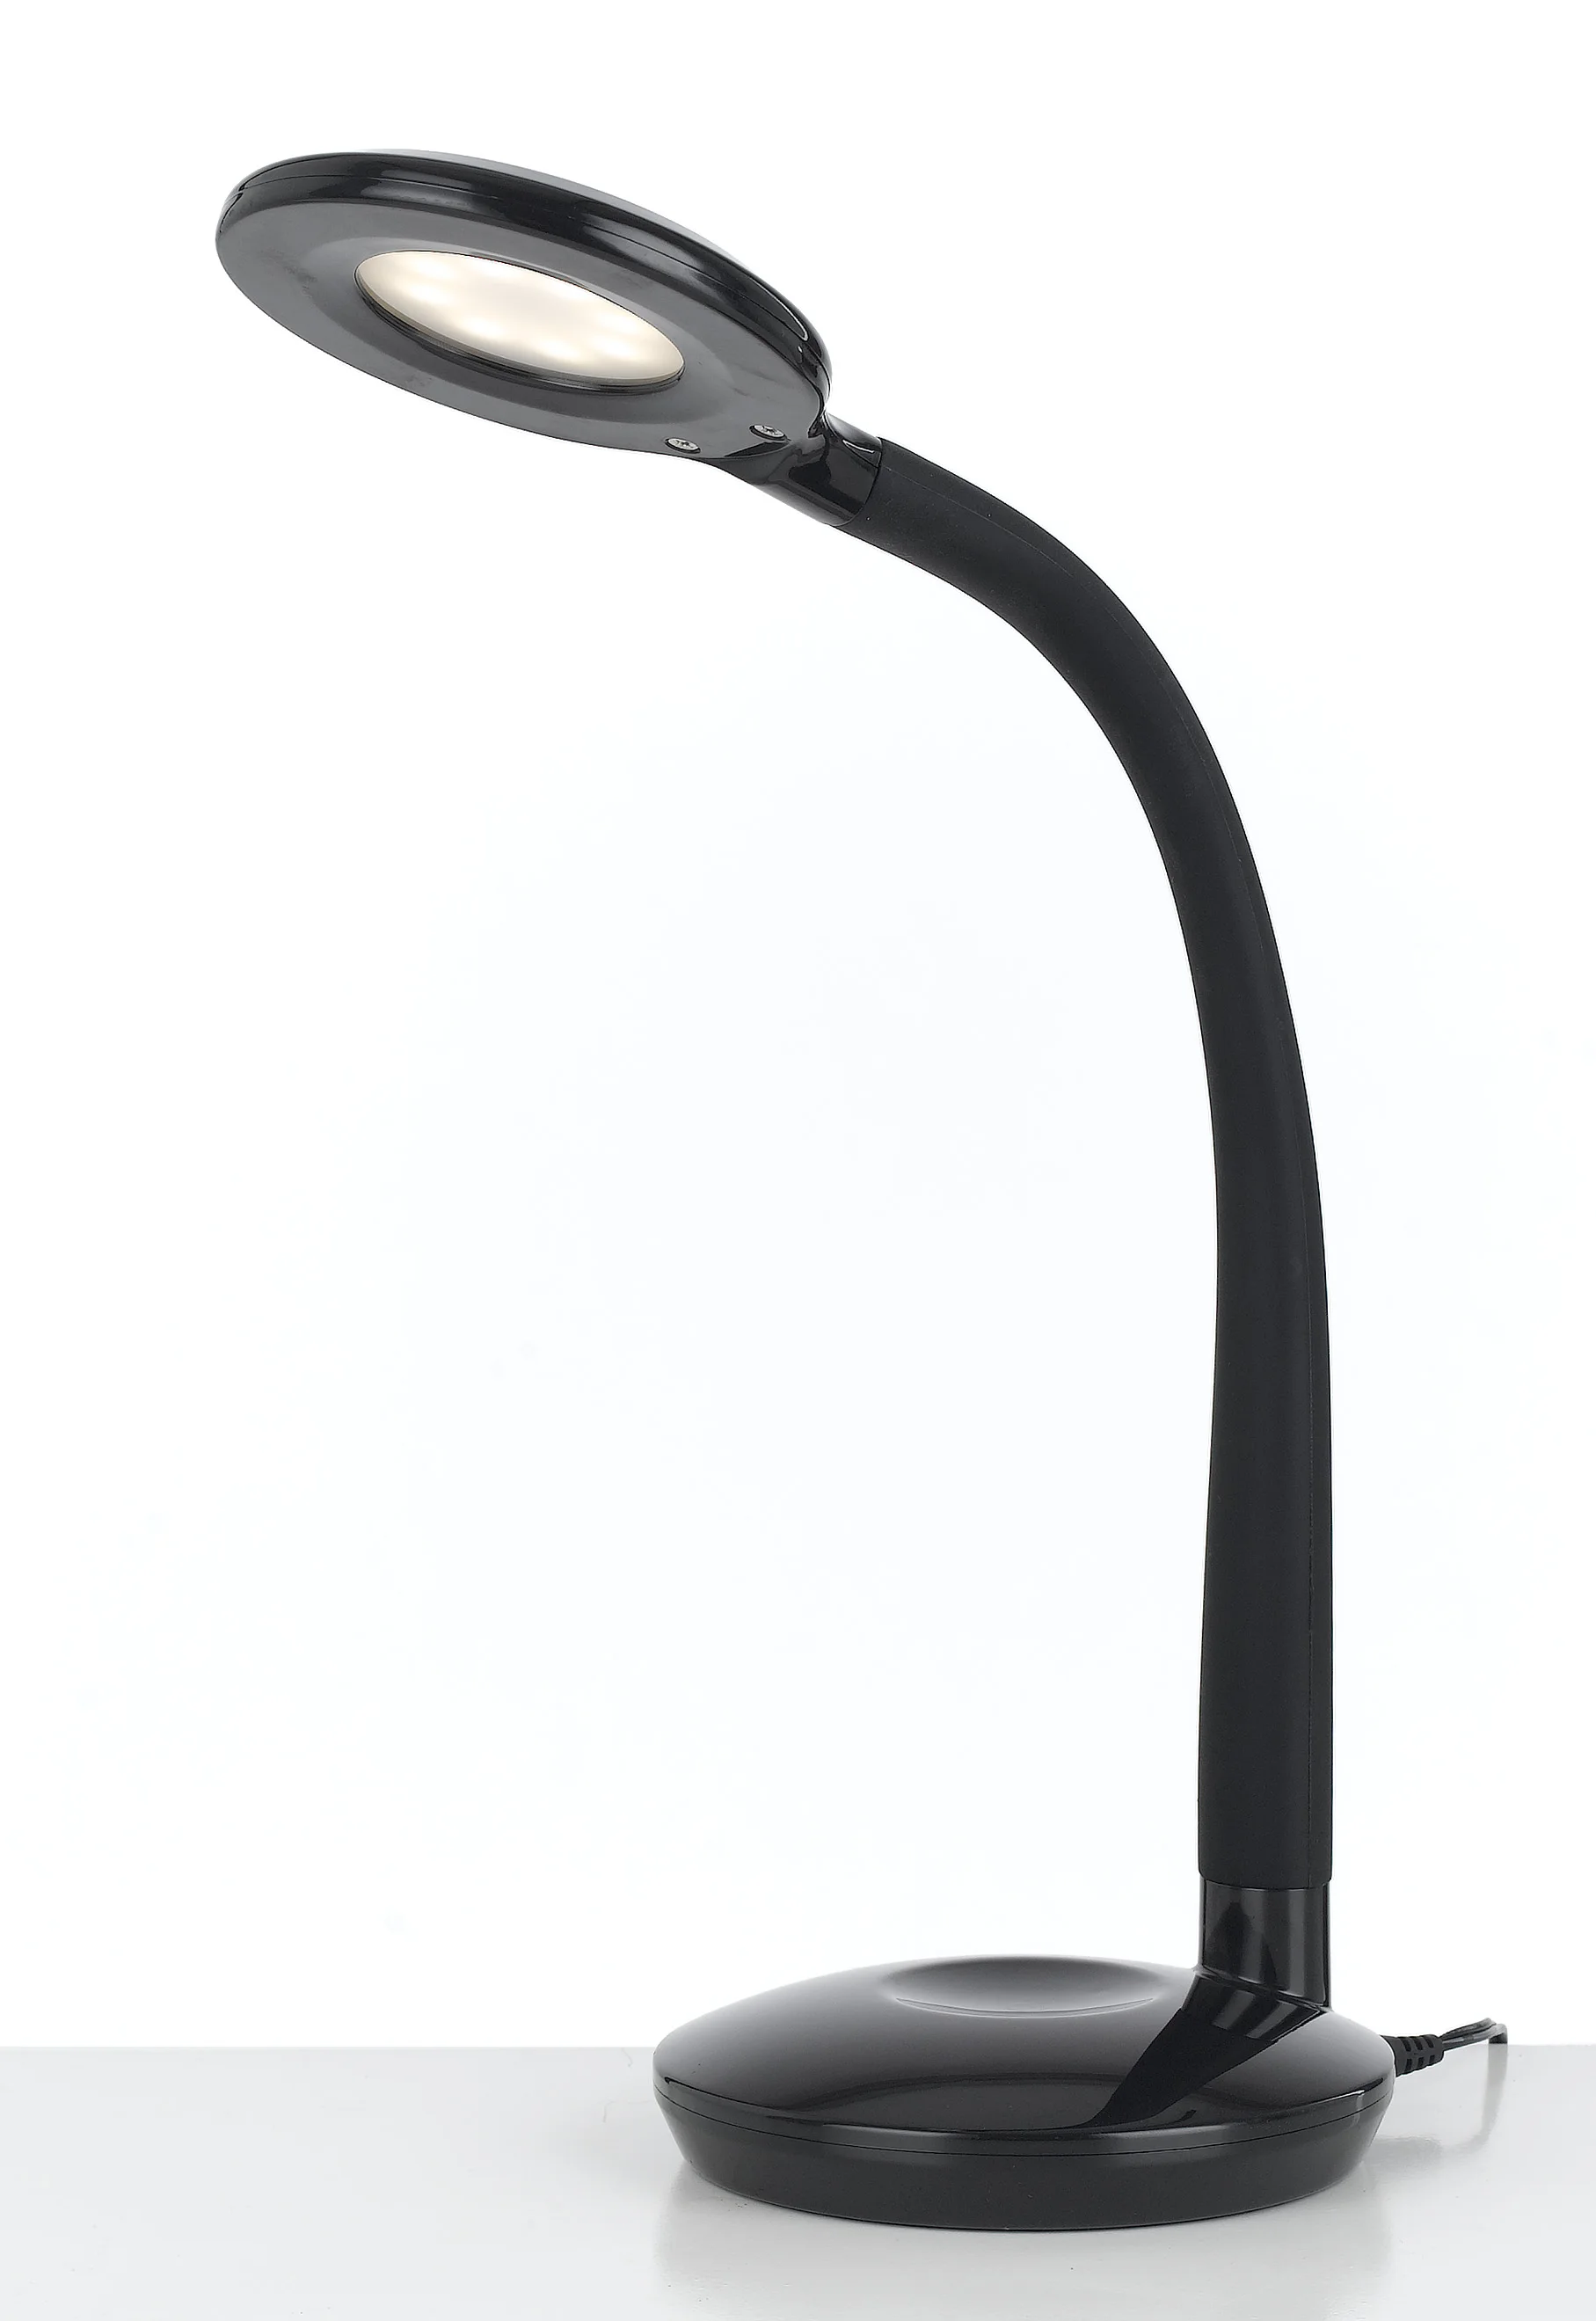 Lampe de Lecture Lumière Chaud 2800K Lire Pour Apprendre 360 ° réglable Protection des Yeux Lampe de Bureau LED à Pince Noir avec Ampoule GU10 6W Dimmable 3 Niveaux de Luminosité 